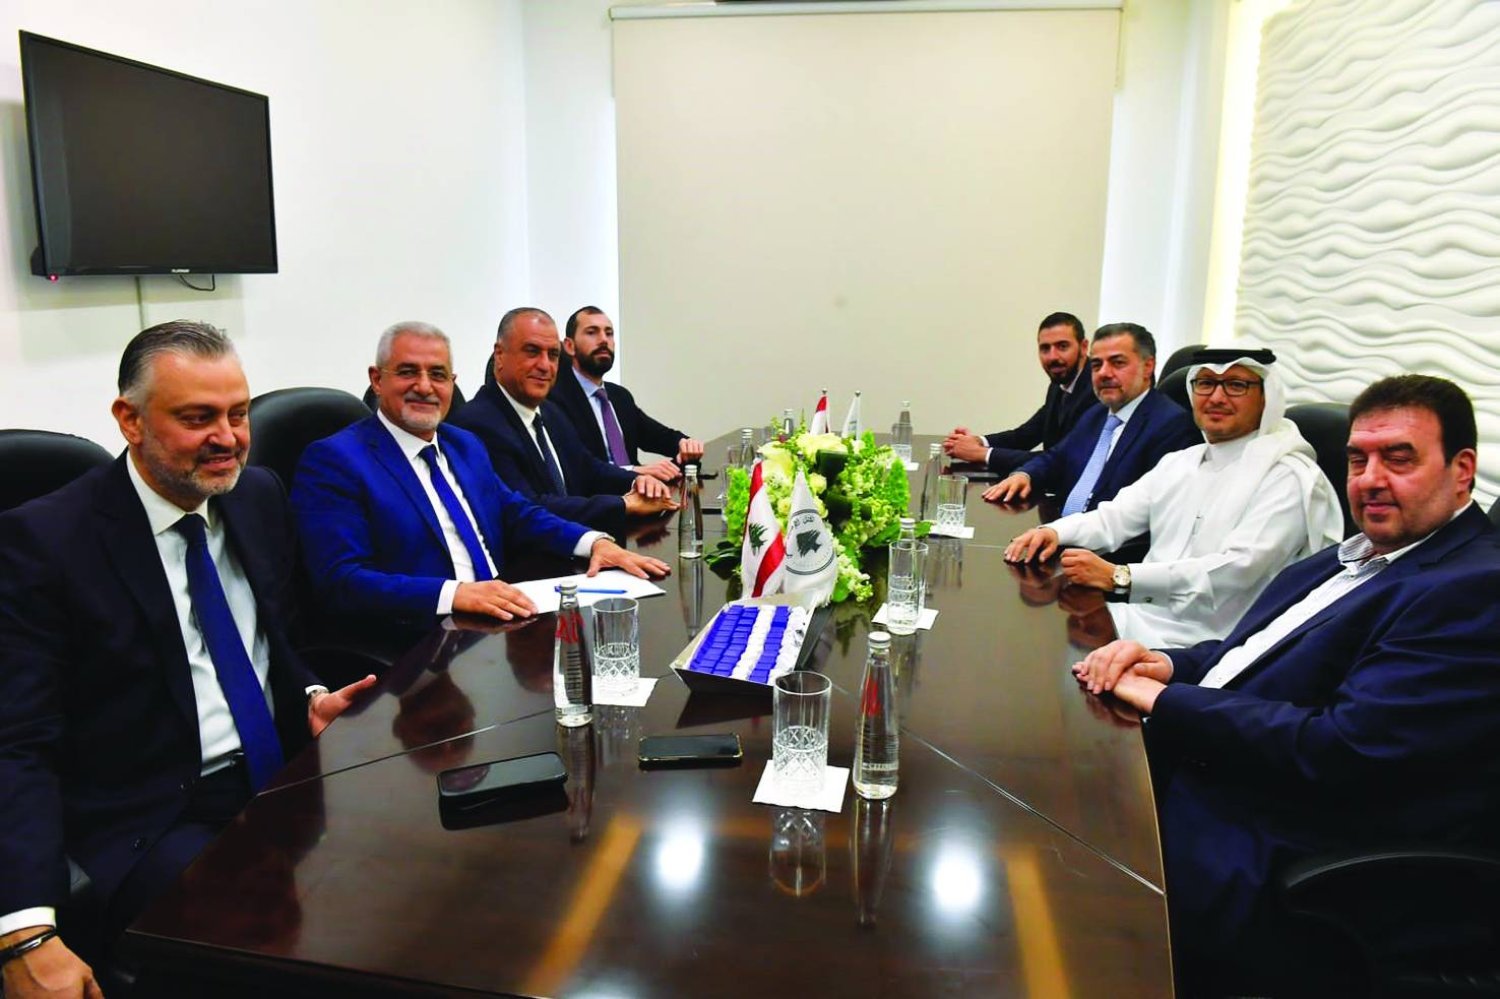 Suudi Arabistan Büyükelçisi Velid Buhari, Ulusal Ilımlılık Bloğu’nu ziyaret etti (Şarku’l Avsat)